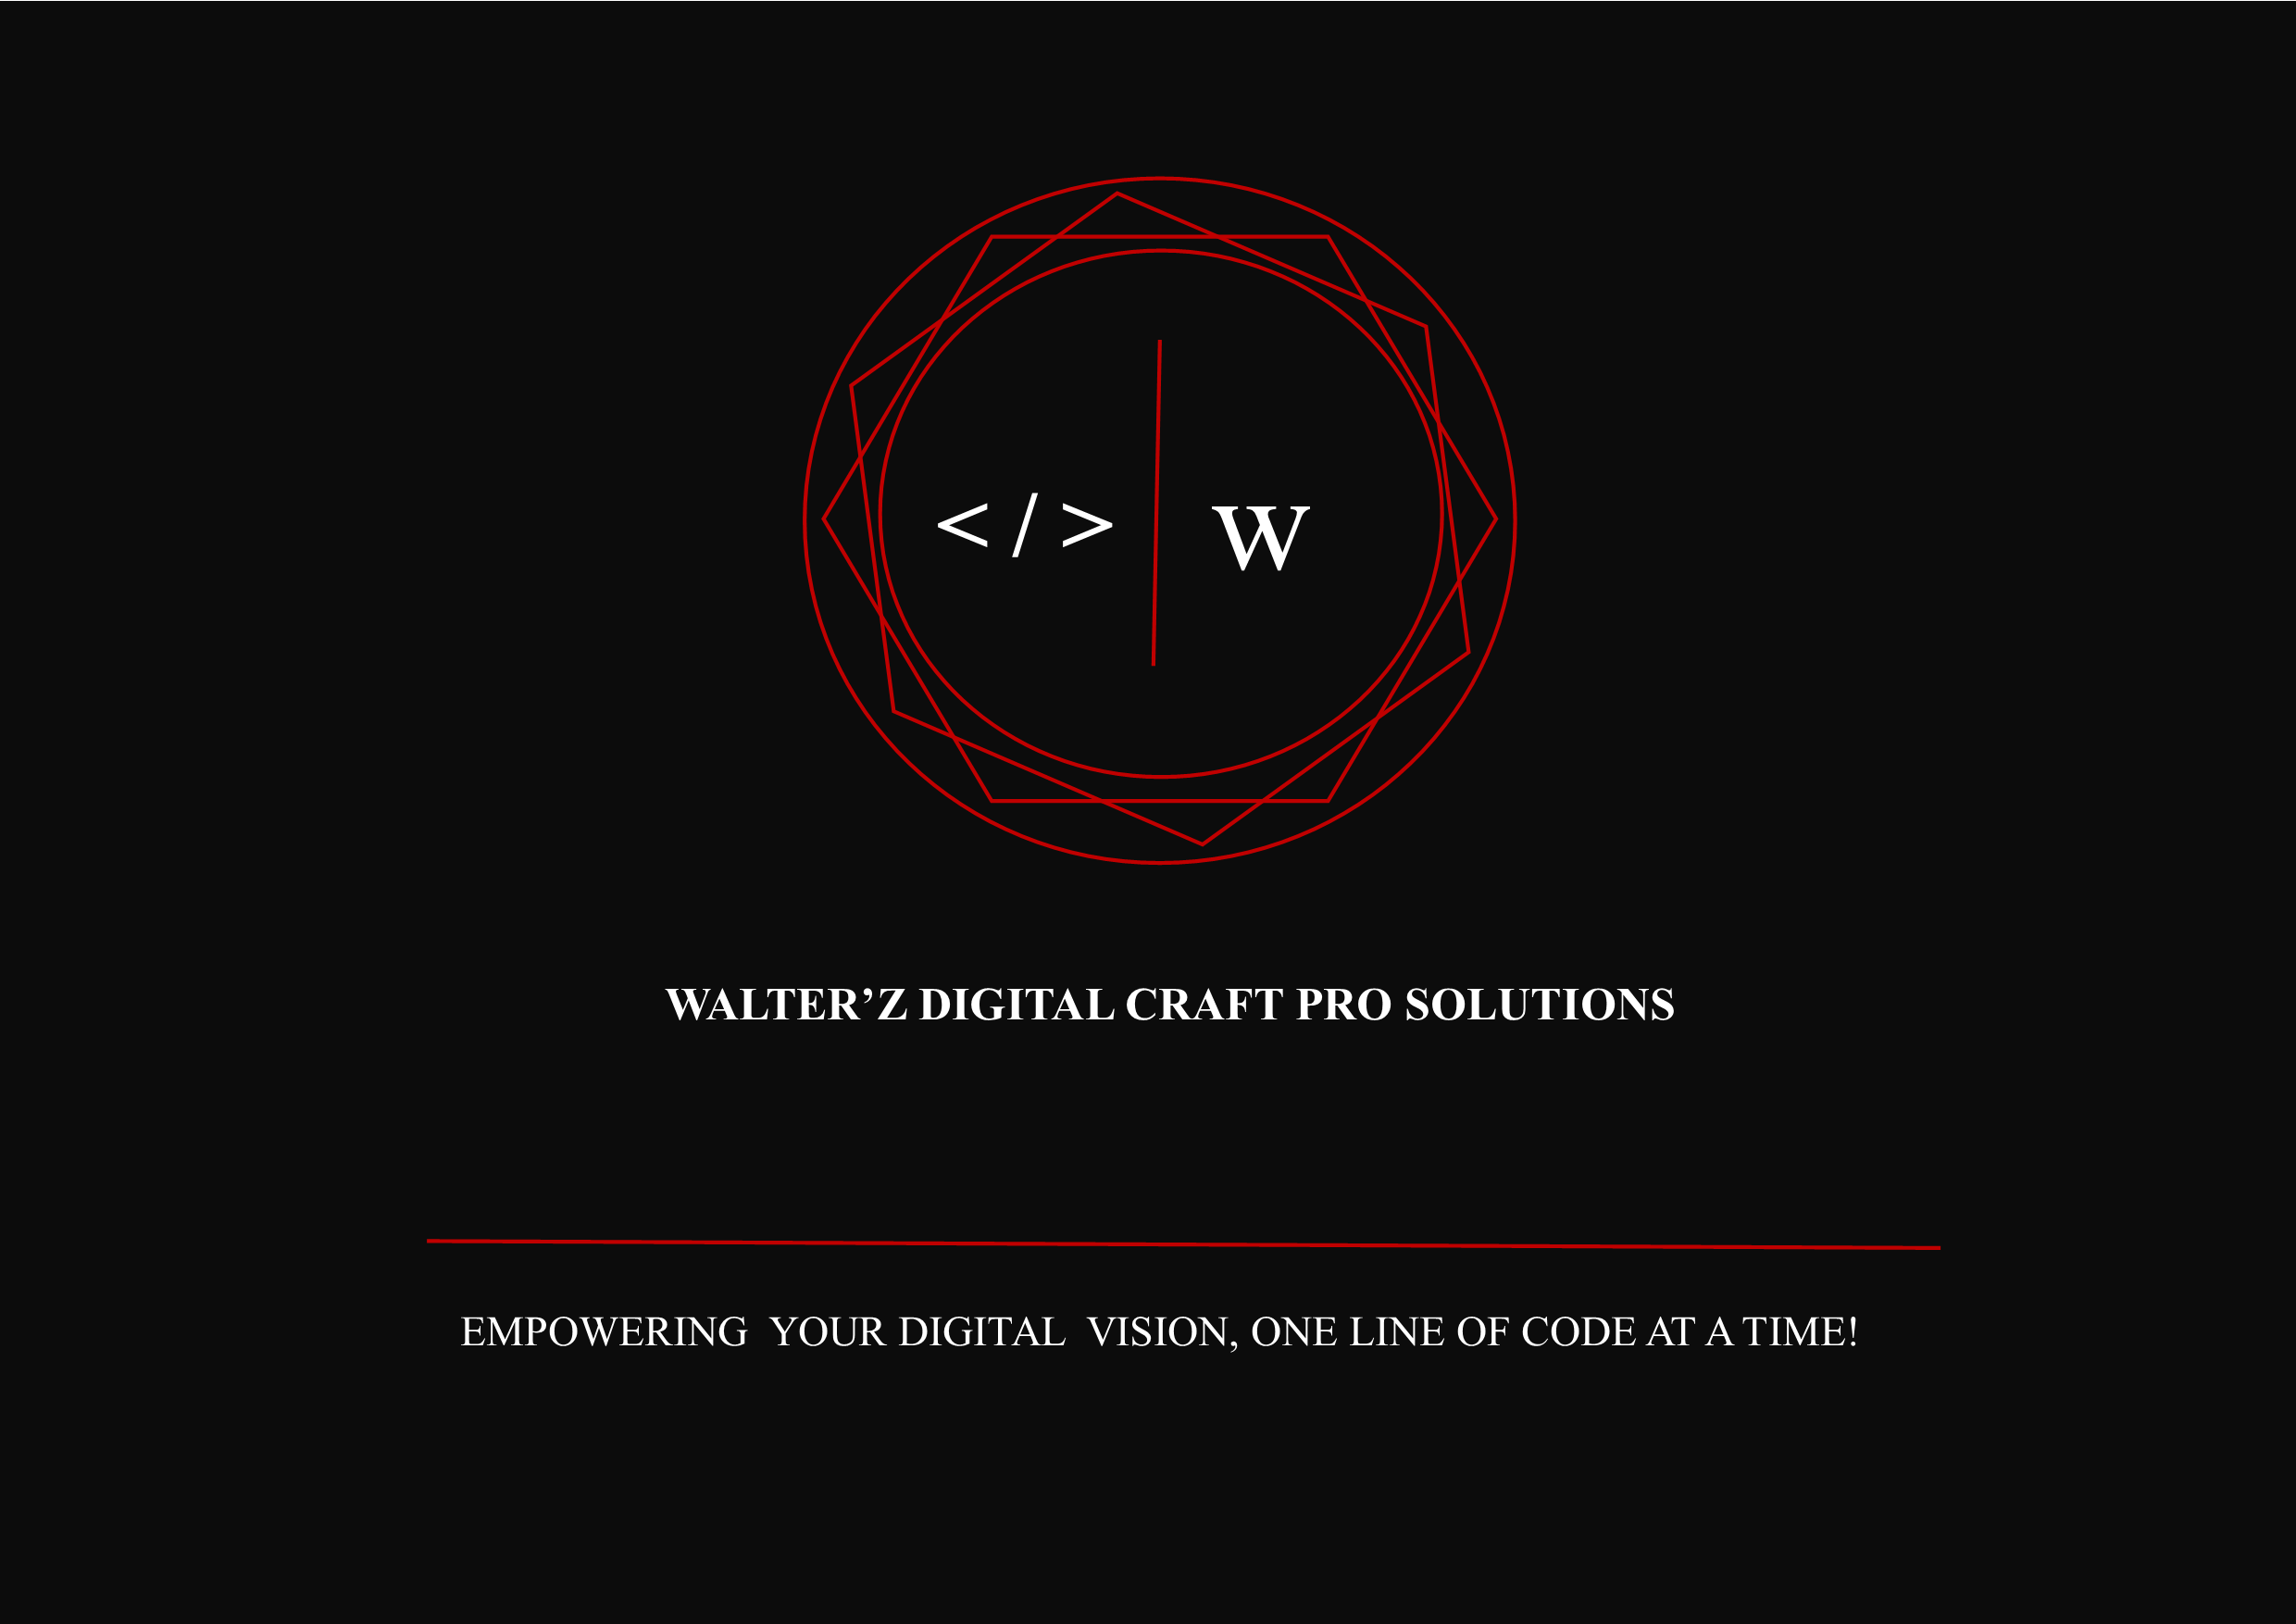 Walter'z Digital Craft Pro Solutions